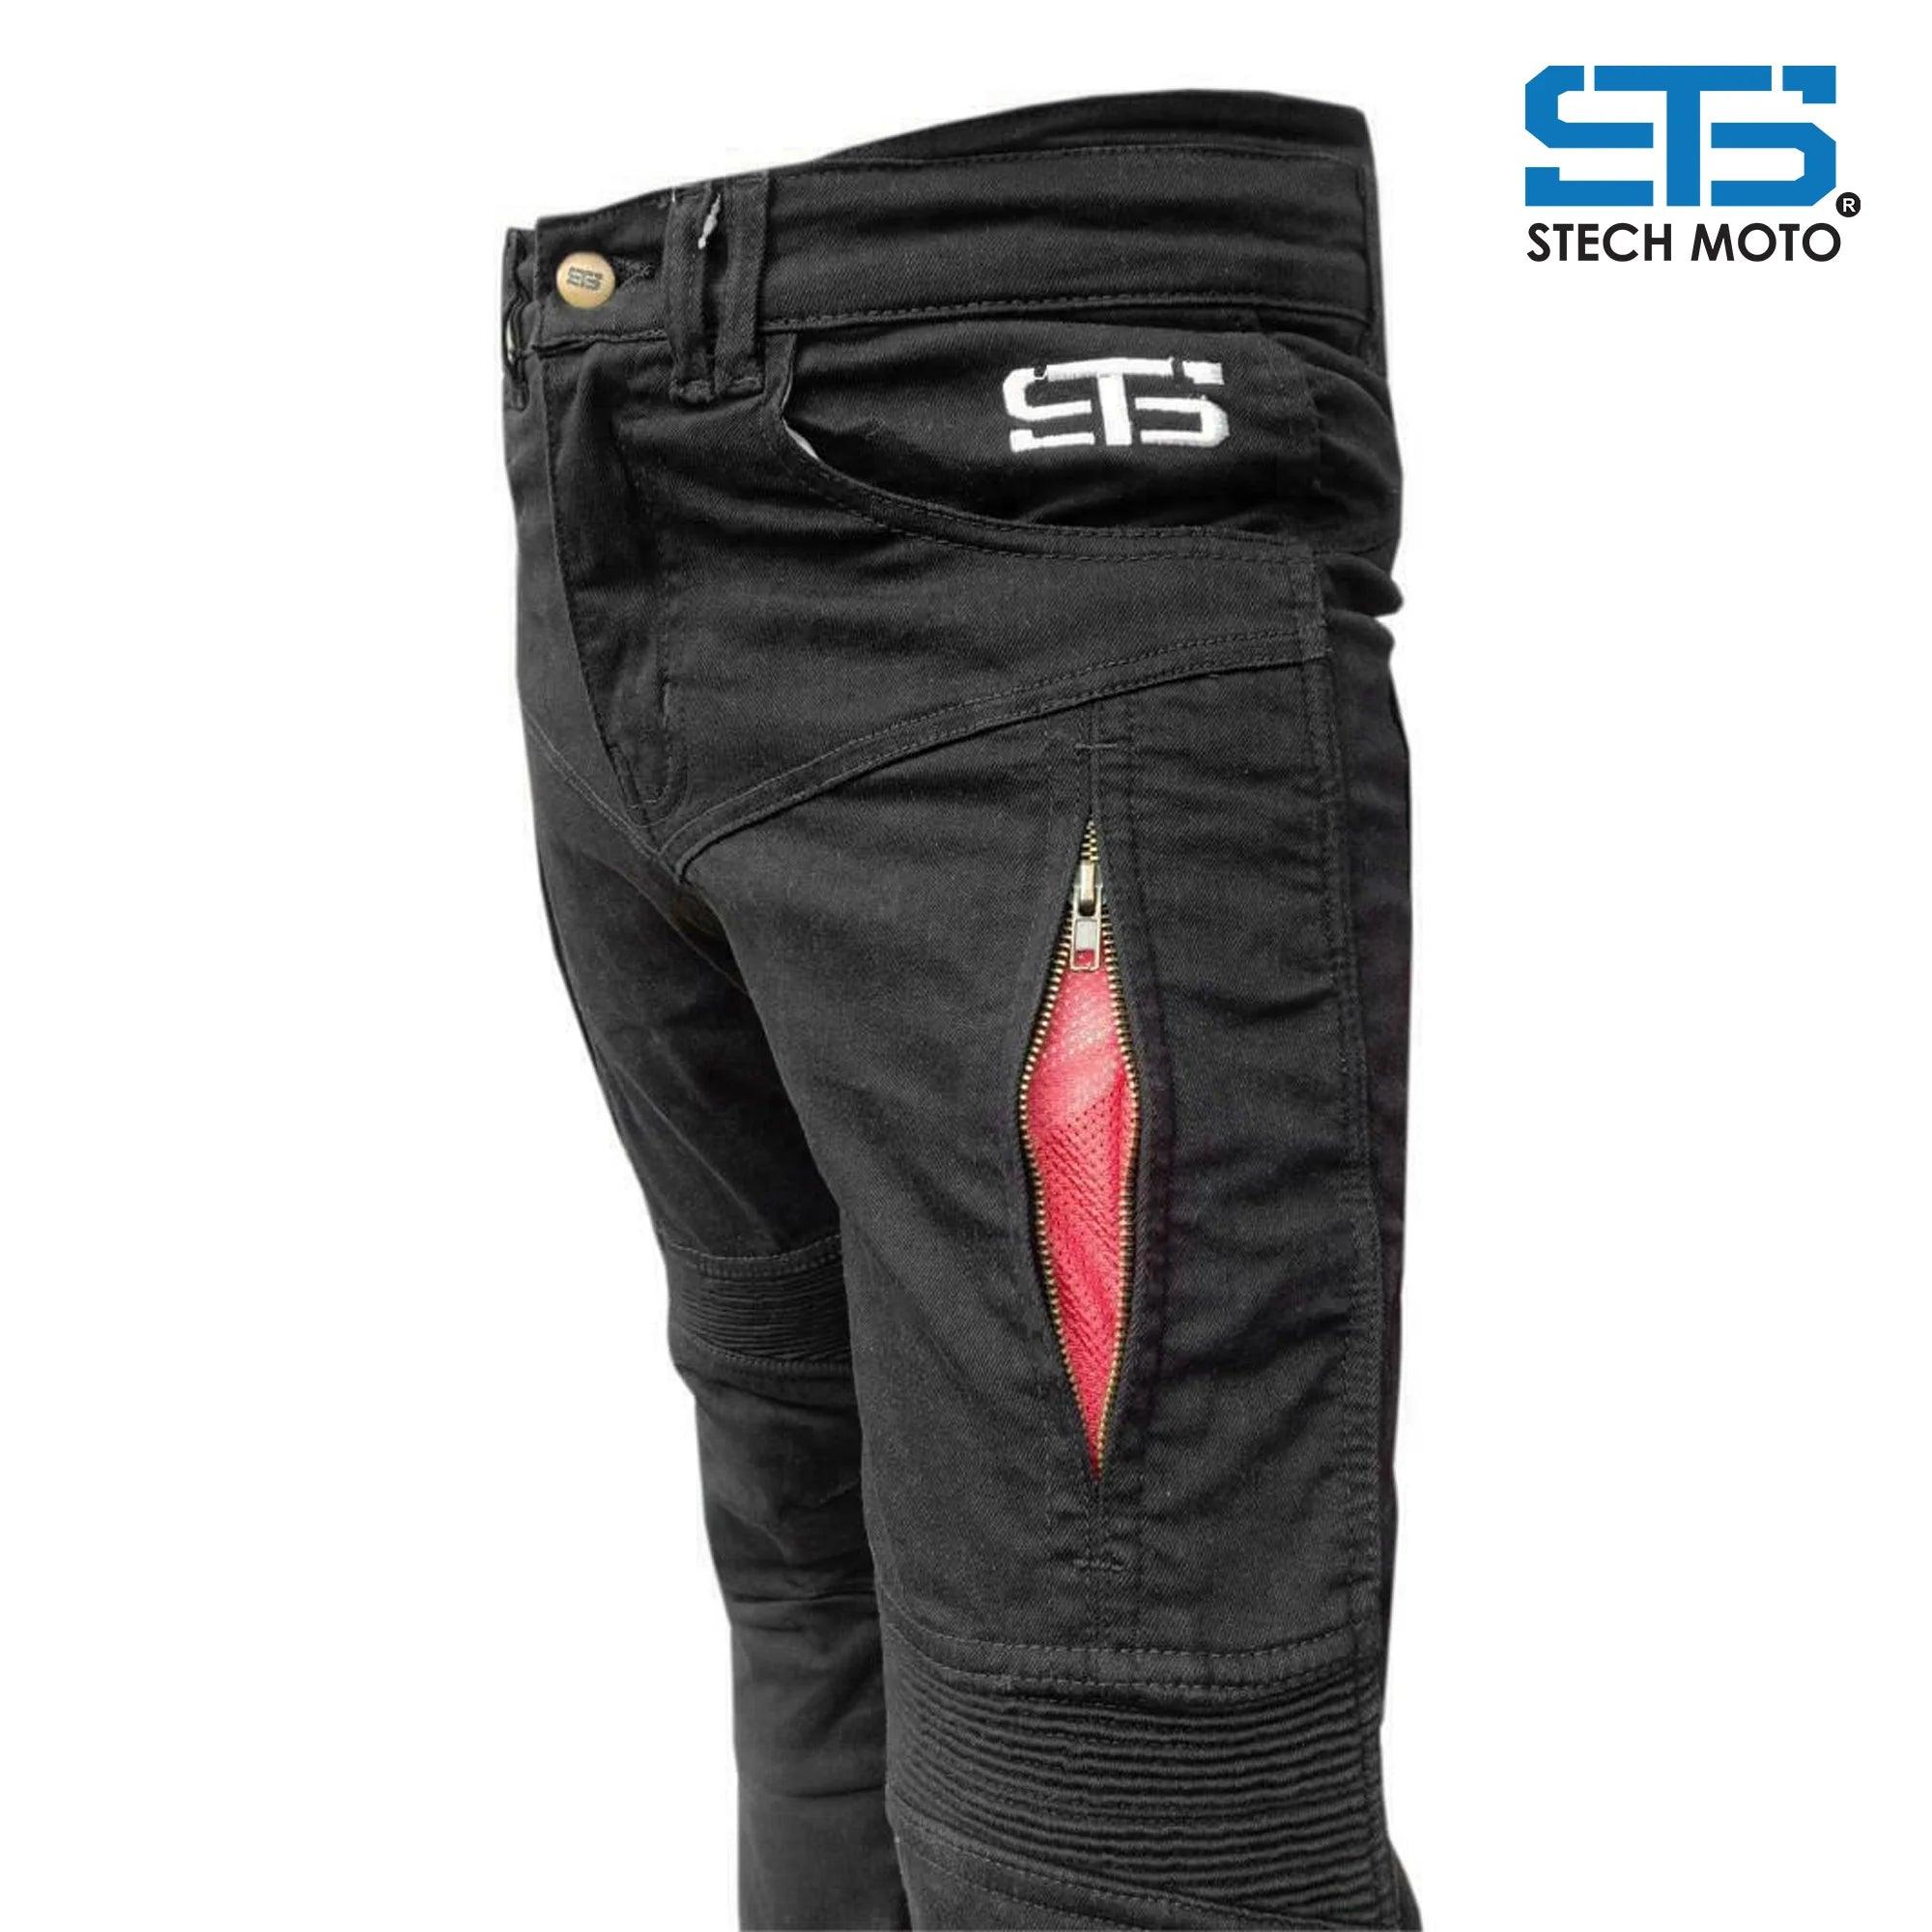 Jeans da Moto pantaloni tecnico Stechmoto ST 666 Falcon con Aramide - Am Moto-Abbigliamento Moto